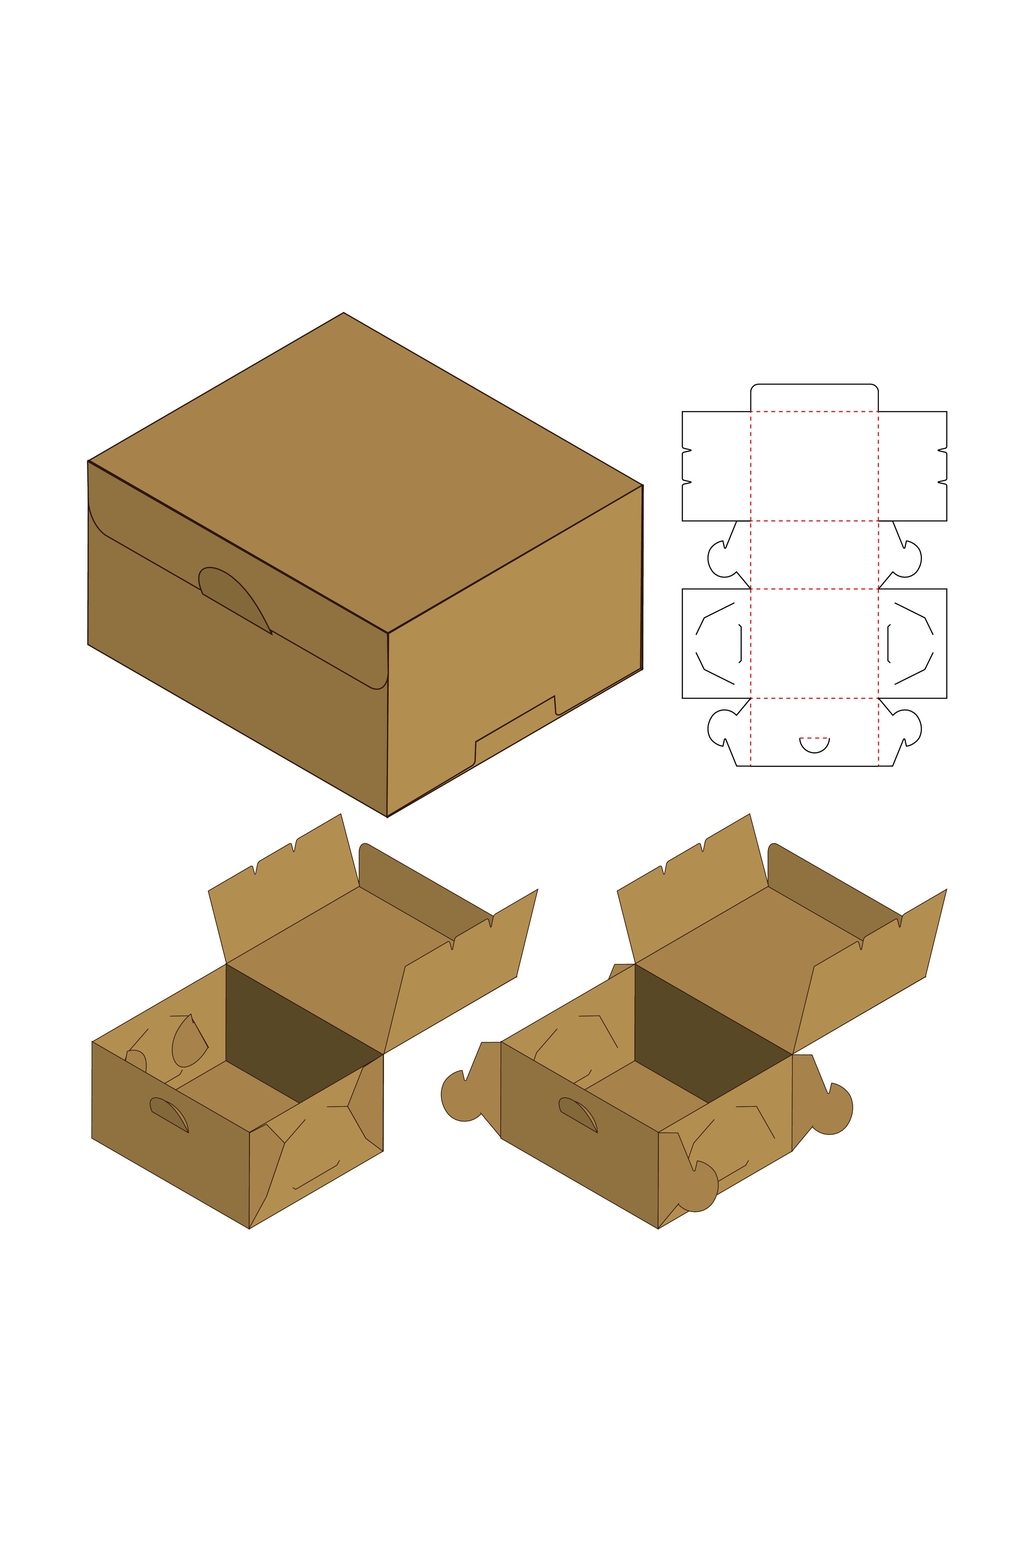 普遍设计产品包装盒展开图